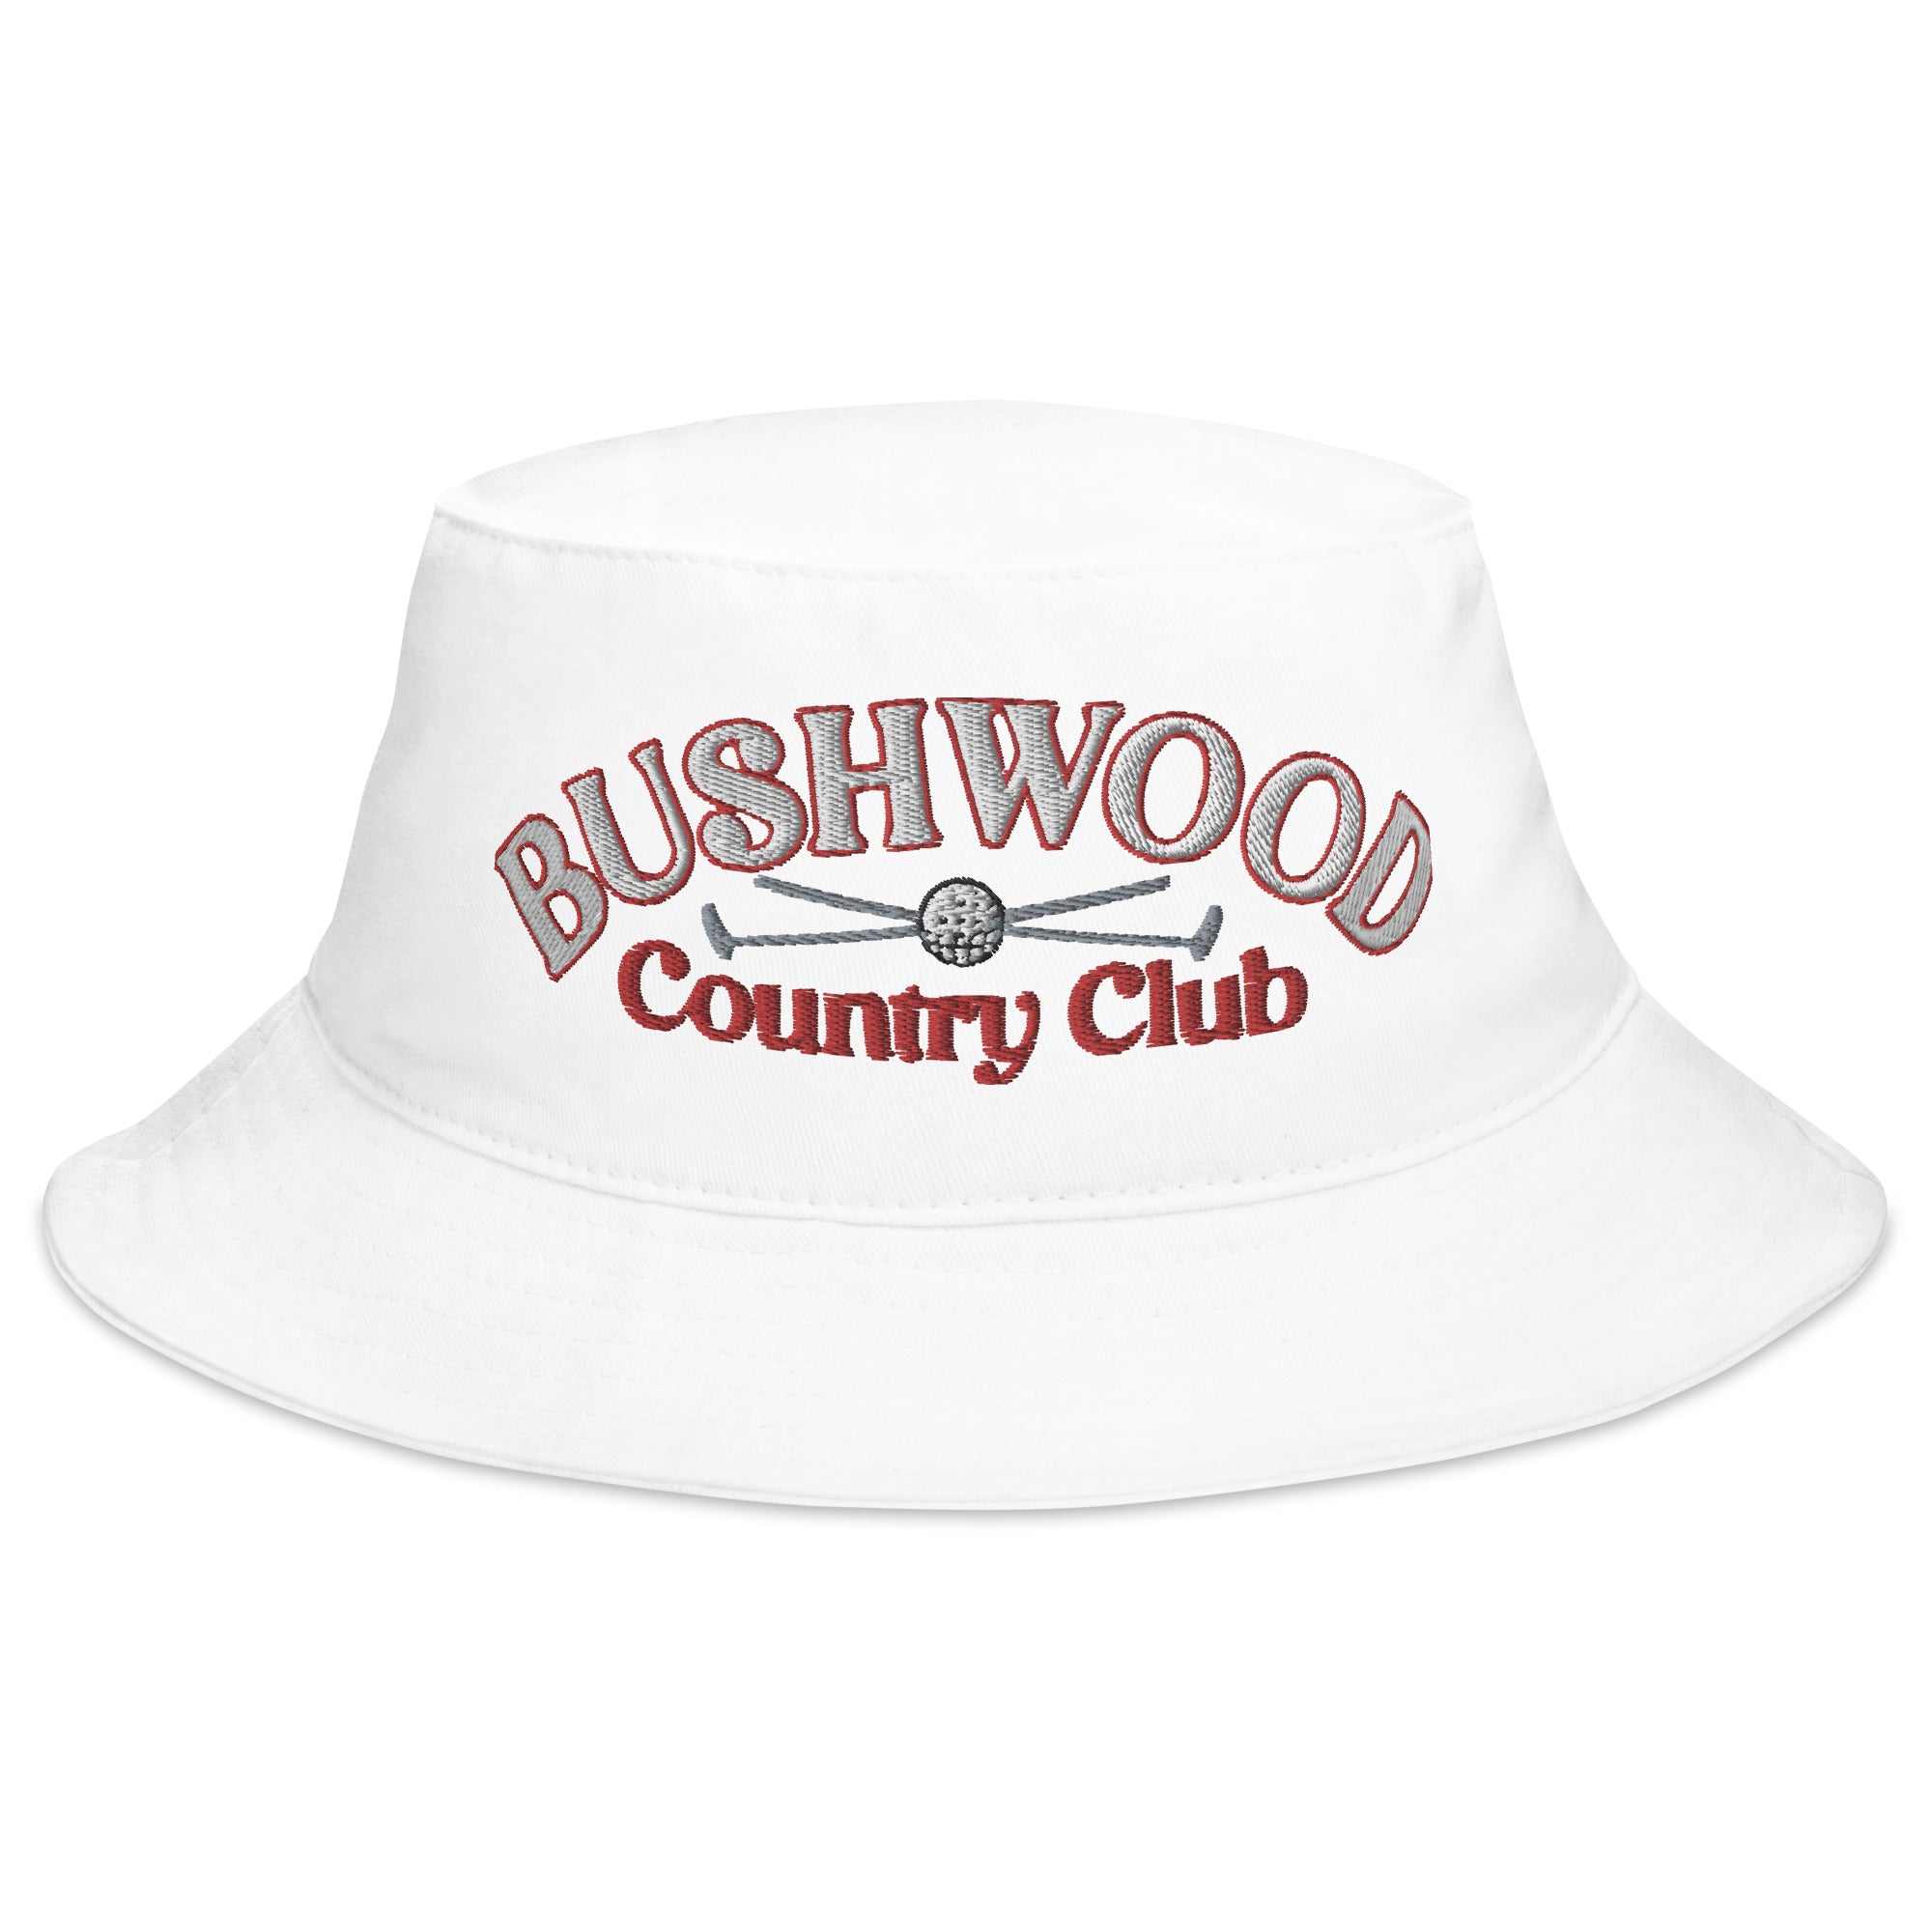 Bushwood Country Club Bucket Hat